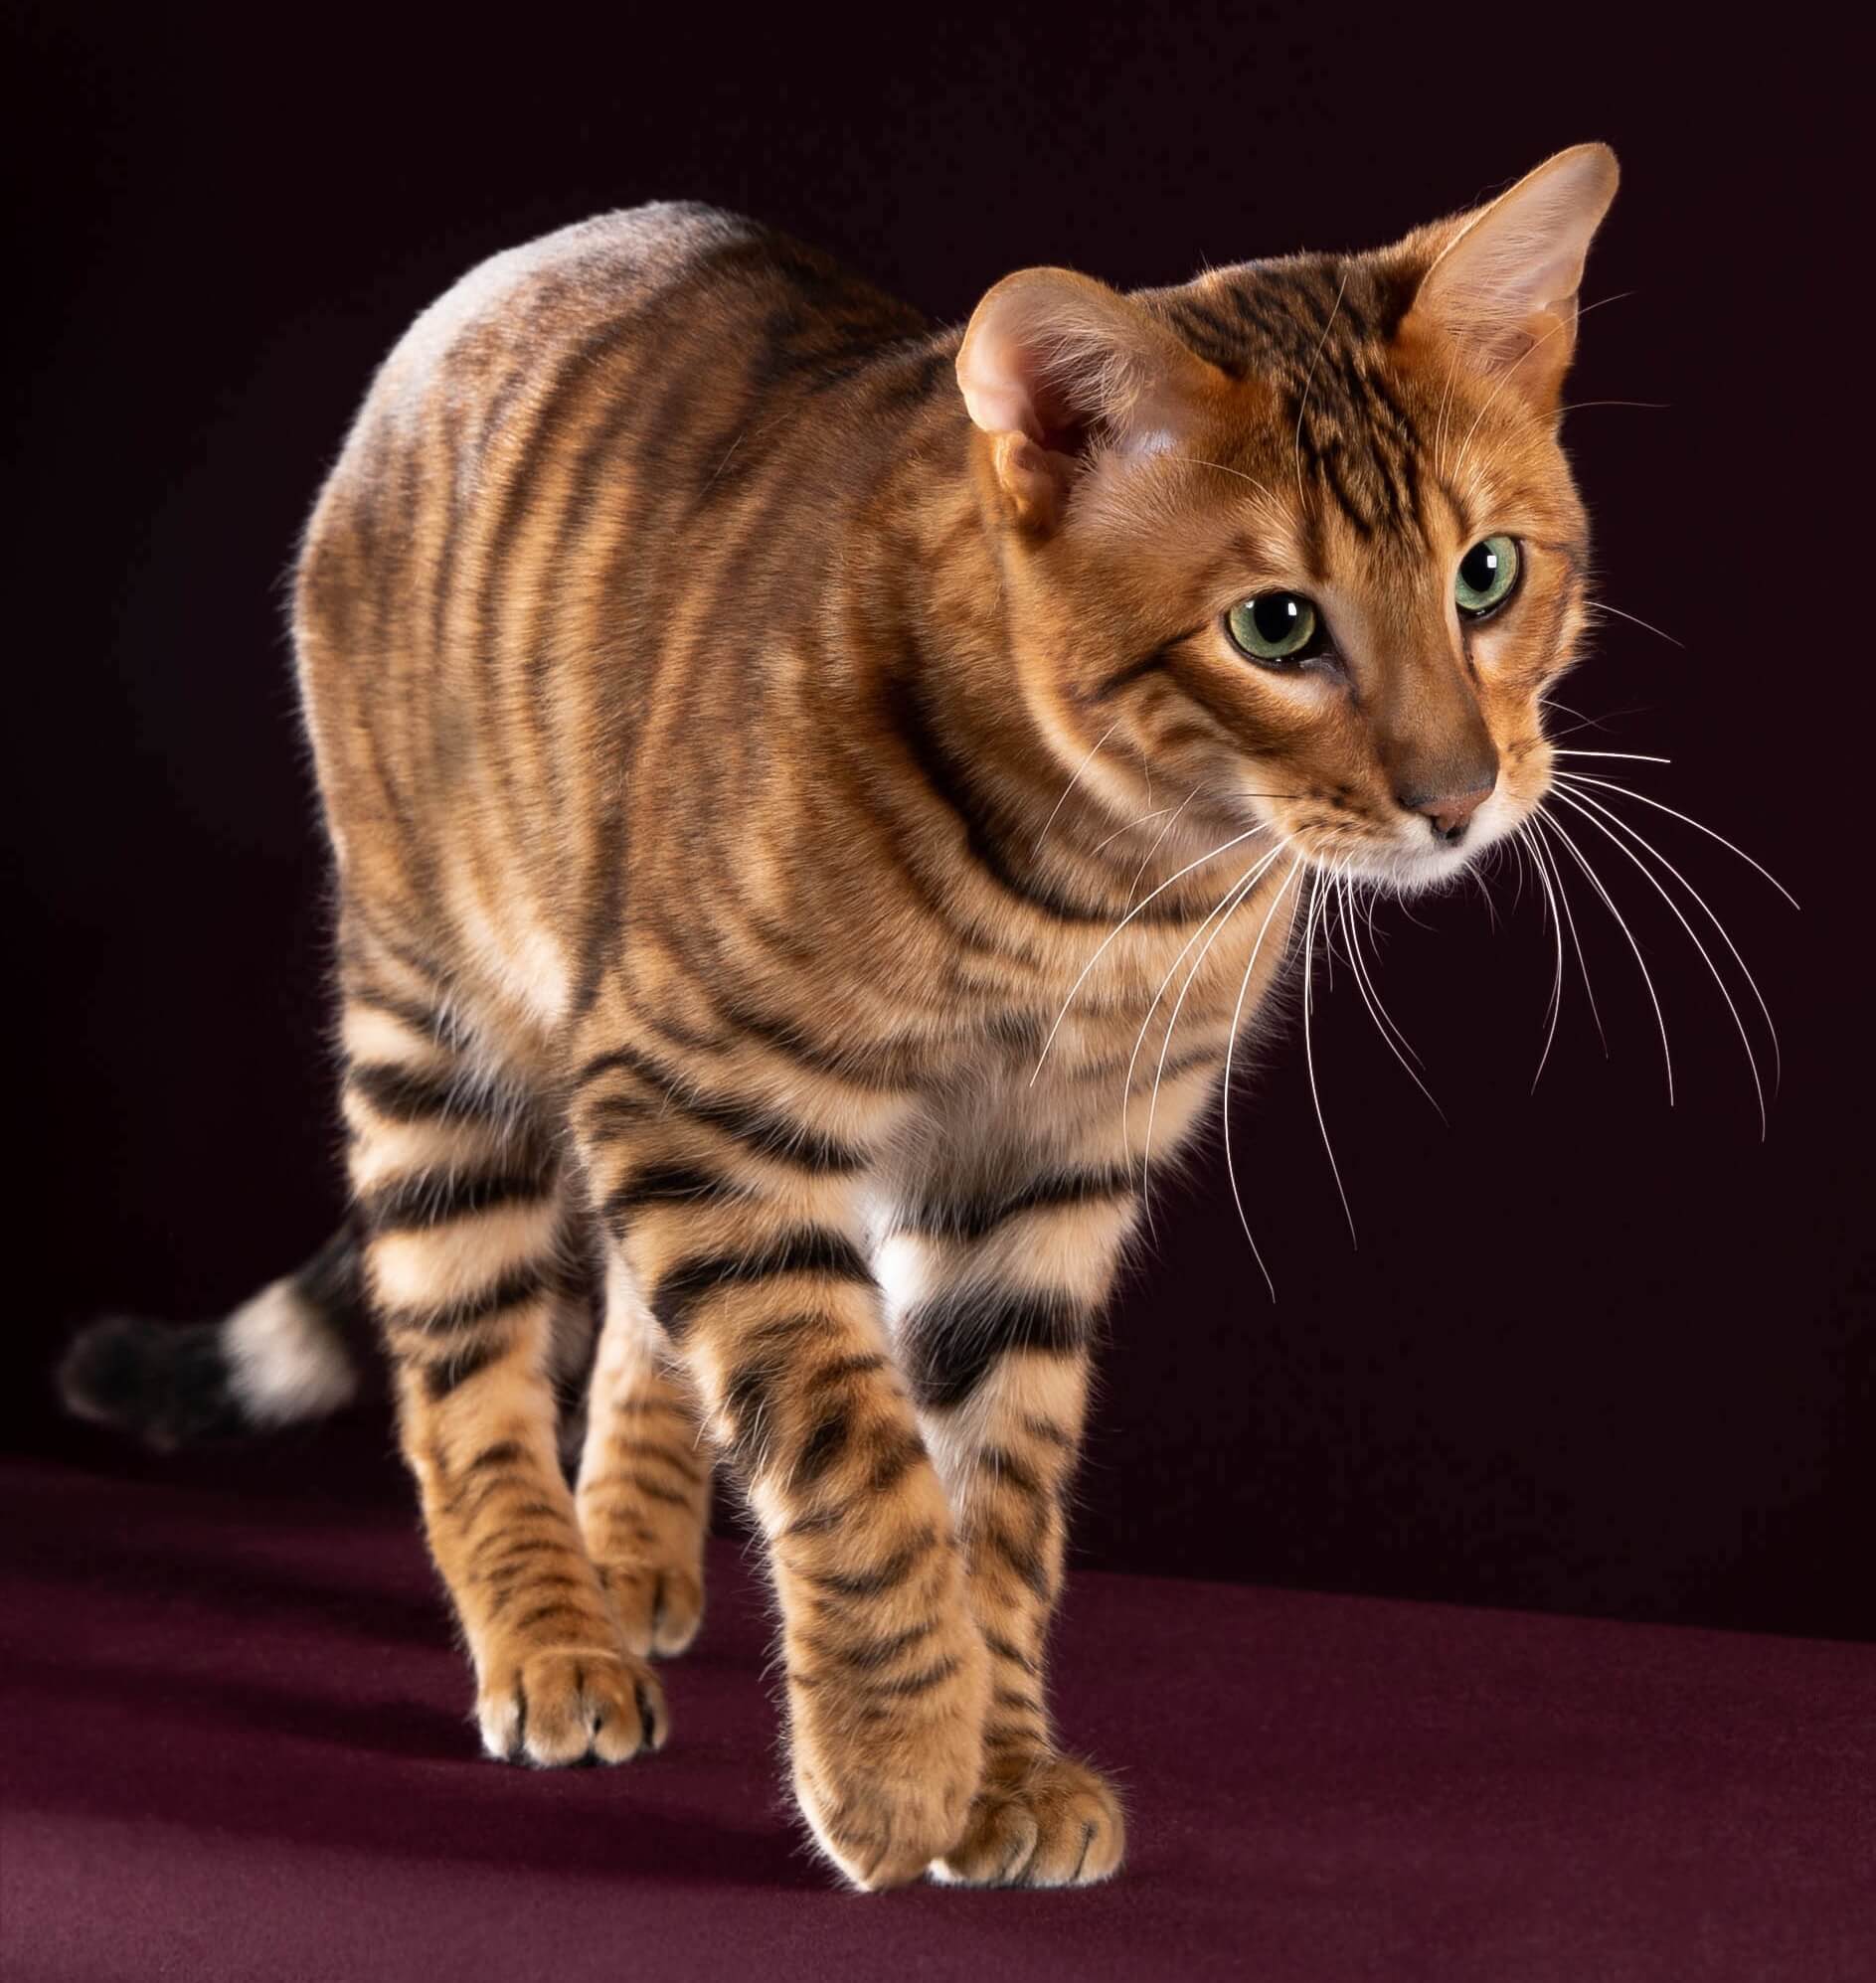 Кошки тигрового окраса или усатики-полосатики в «тельняшках» |